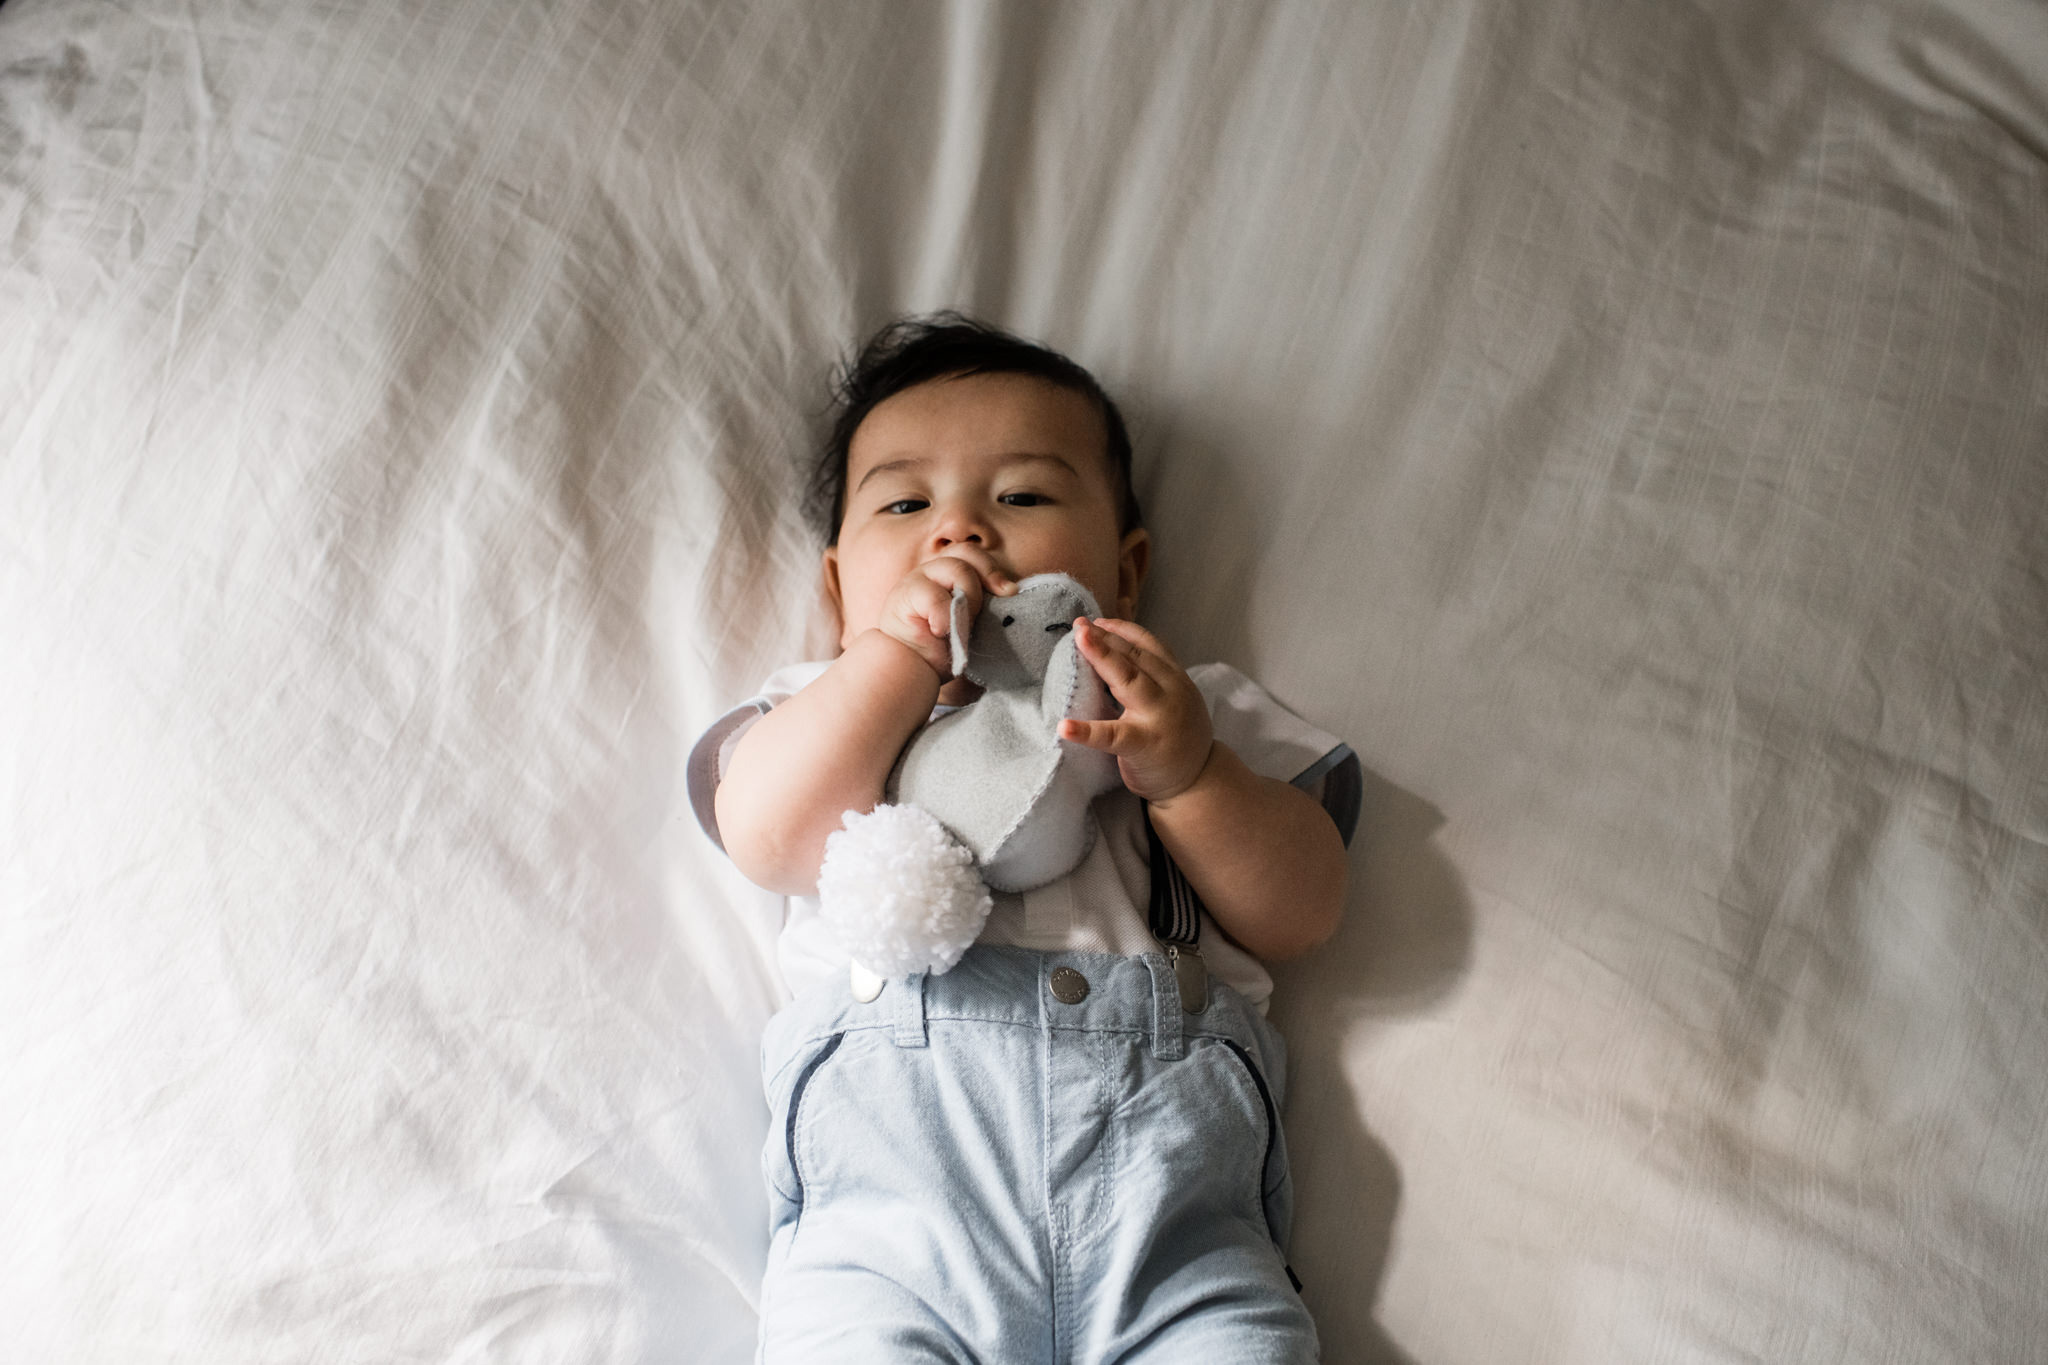 163-newborn-documentary-at-home-toronto-family-photoshoot.jpg